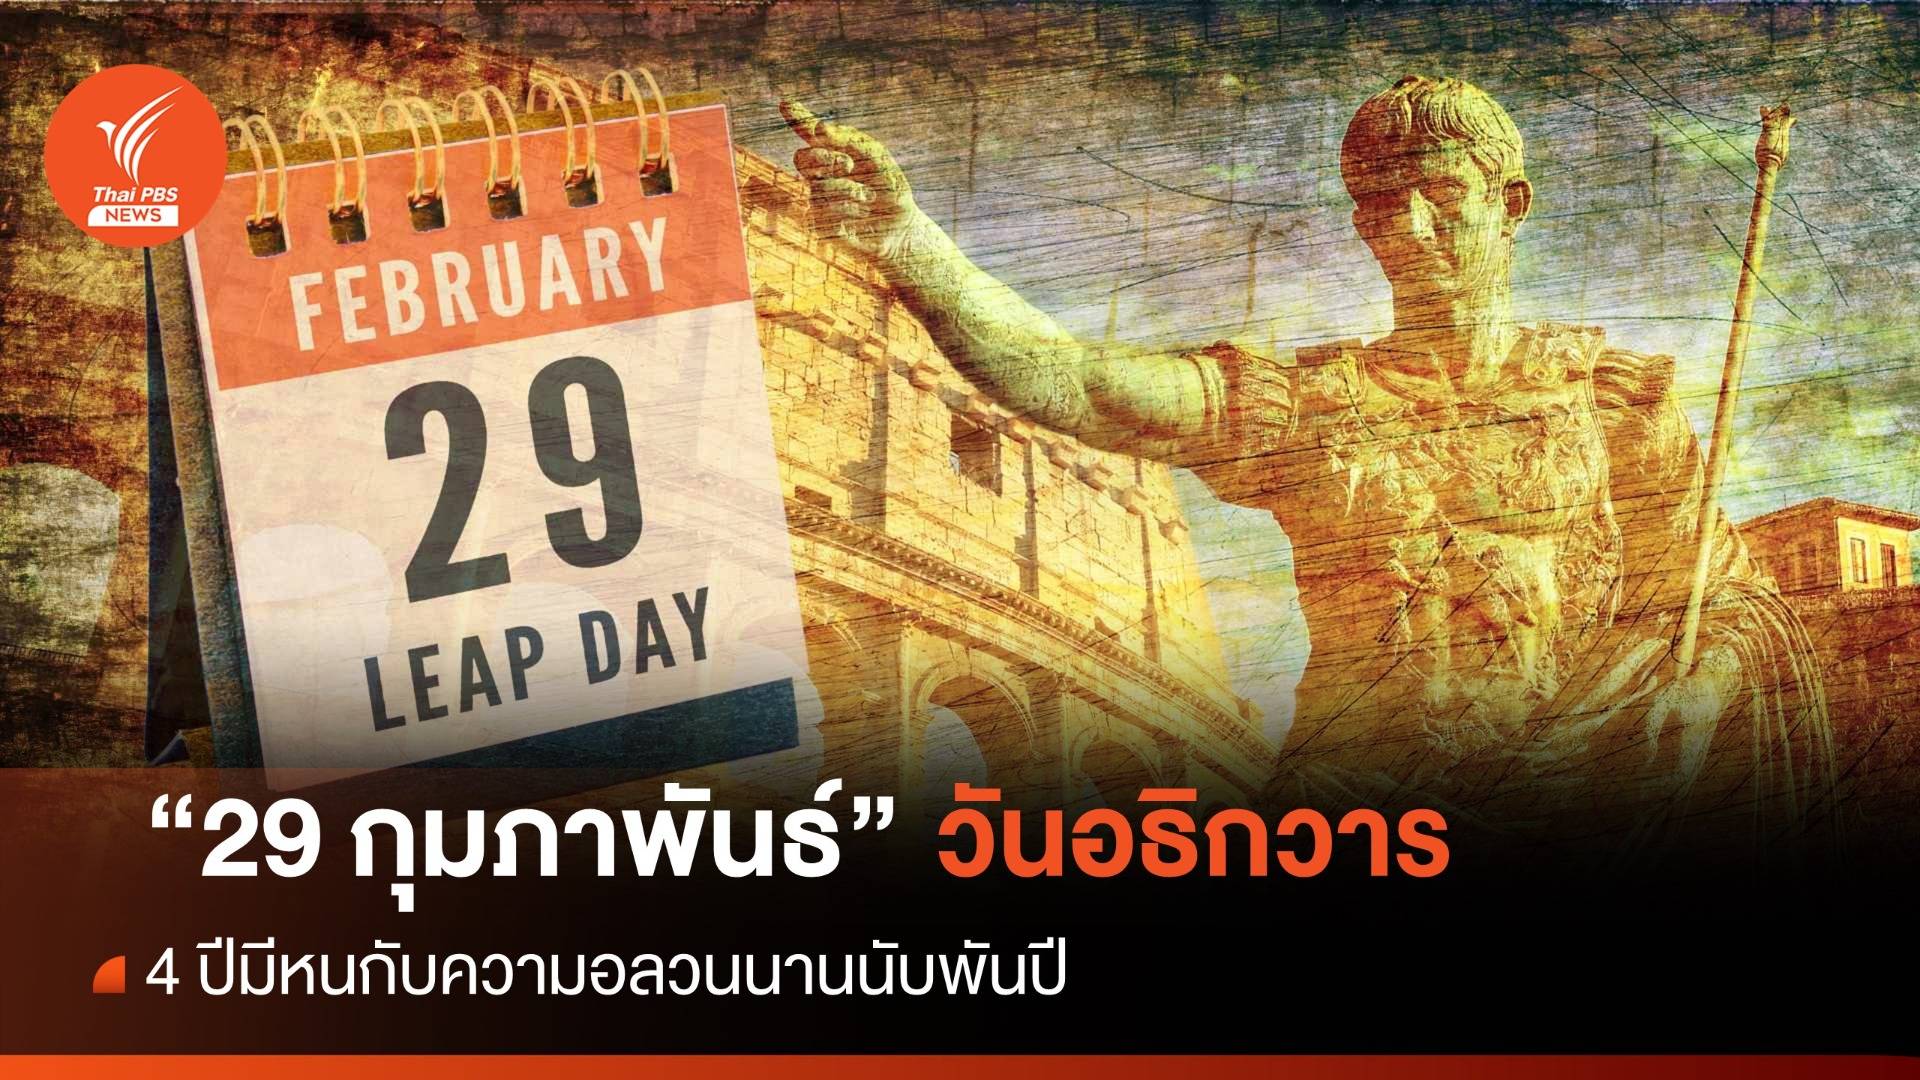 "29 กุมภาพันธ์" 4 ปีมีหน "ความอลวน" นานนับพันปี 